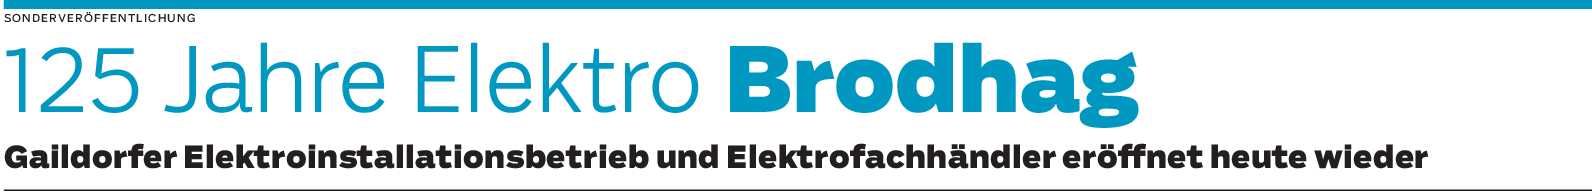 Gaildorfer Elektroinstallationsbetrieb Bodhag: Ein neues Kapitel beginnt